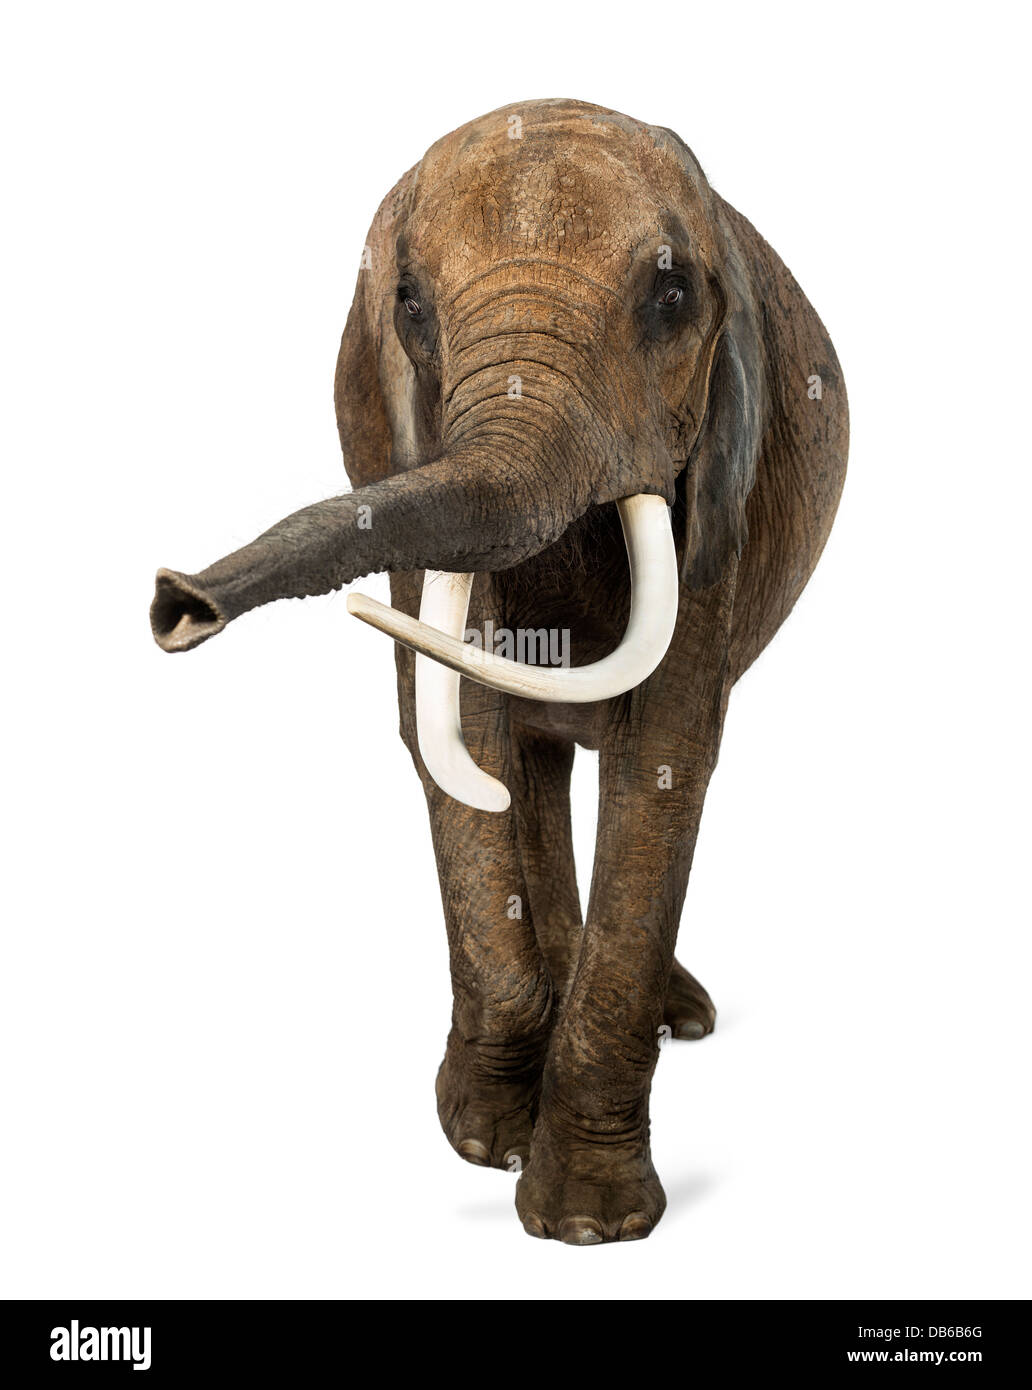 Vue de face de l'éléphant d'Afrique, Loxodonta africana, soulever son tronc contre fond blanc Banque D'Images